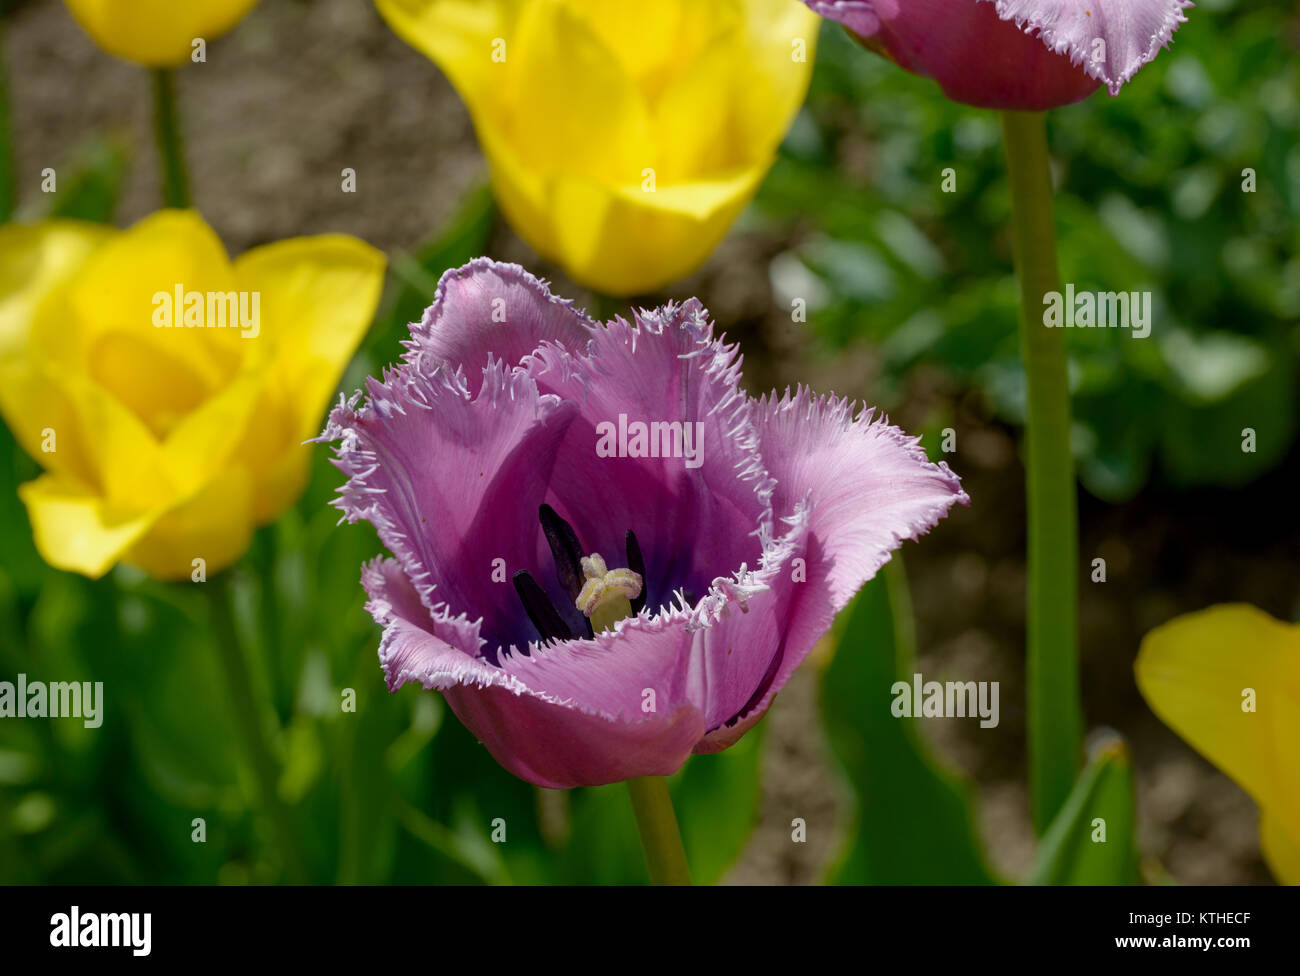 Close-up rosso-violetto orlata tulip flower su Verde foglie e tulipani gialli sfondo nella luce solare giardino su letto di fiori. Foto Stock